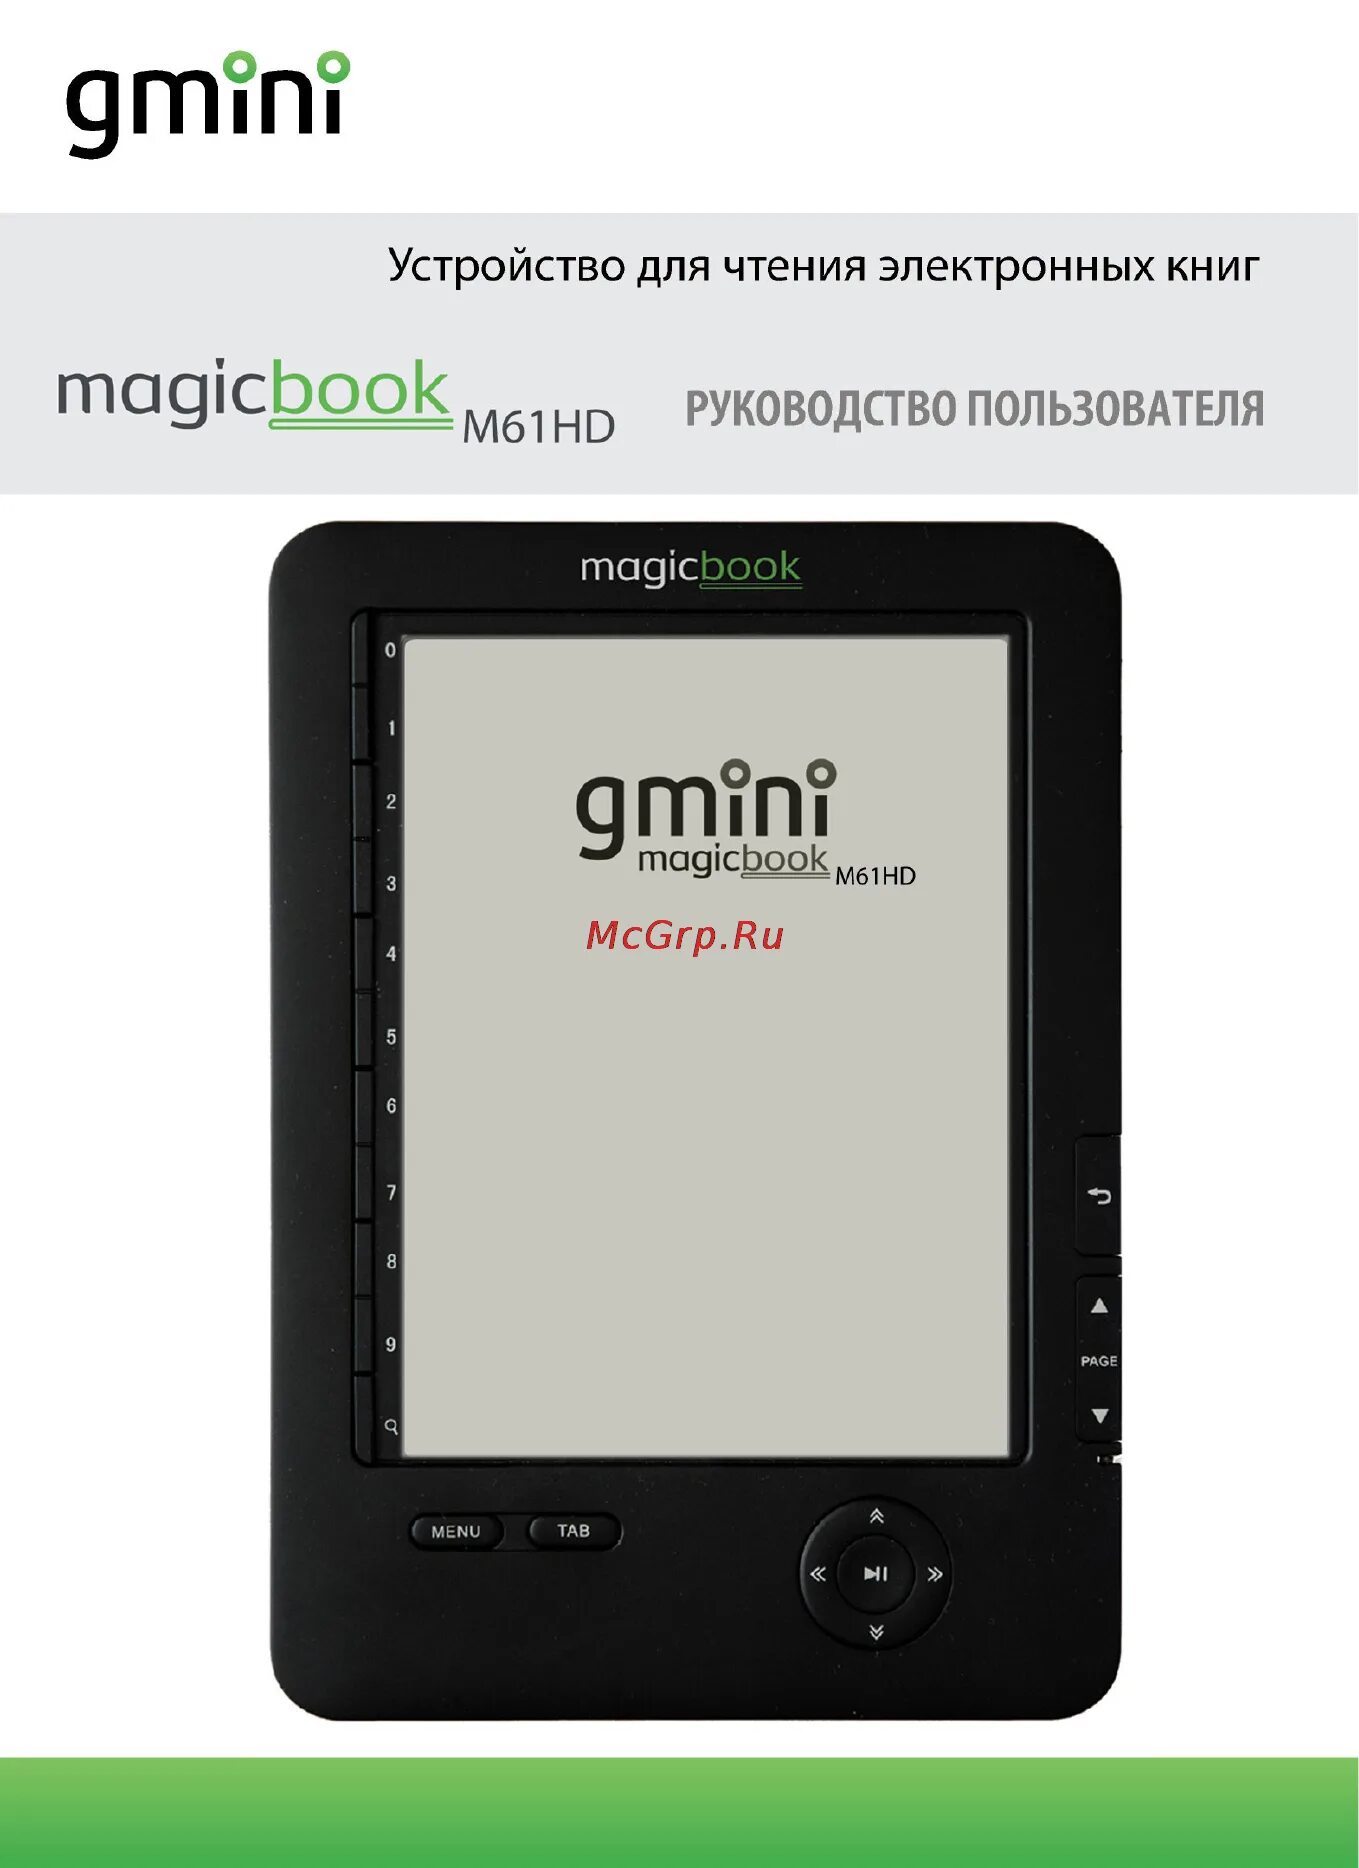 Magicbook pc manager. Gmini MAGICBOOK. Gmini MAGICBOOK m61hd аккумулятор. Электронная книга Gmini MAGICBOOK s65t.